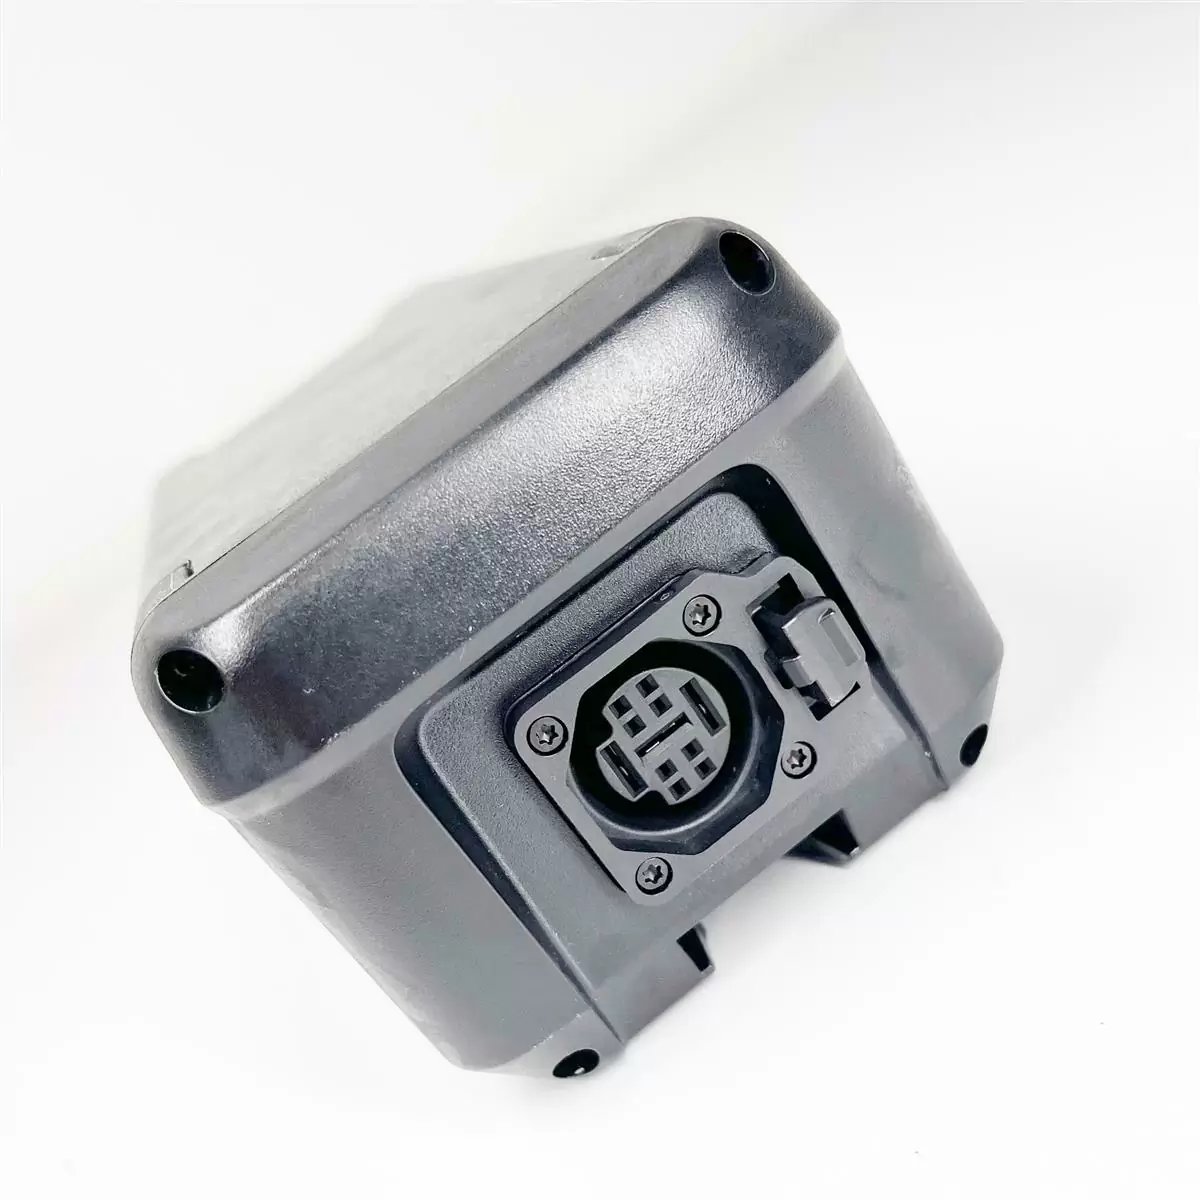 Extensor de alcance da bateria MR-S18 - 360wh para Haibike com motor Yamaha PW-X3 / PW-S2 #5